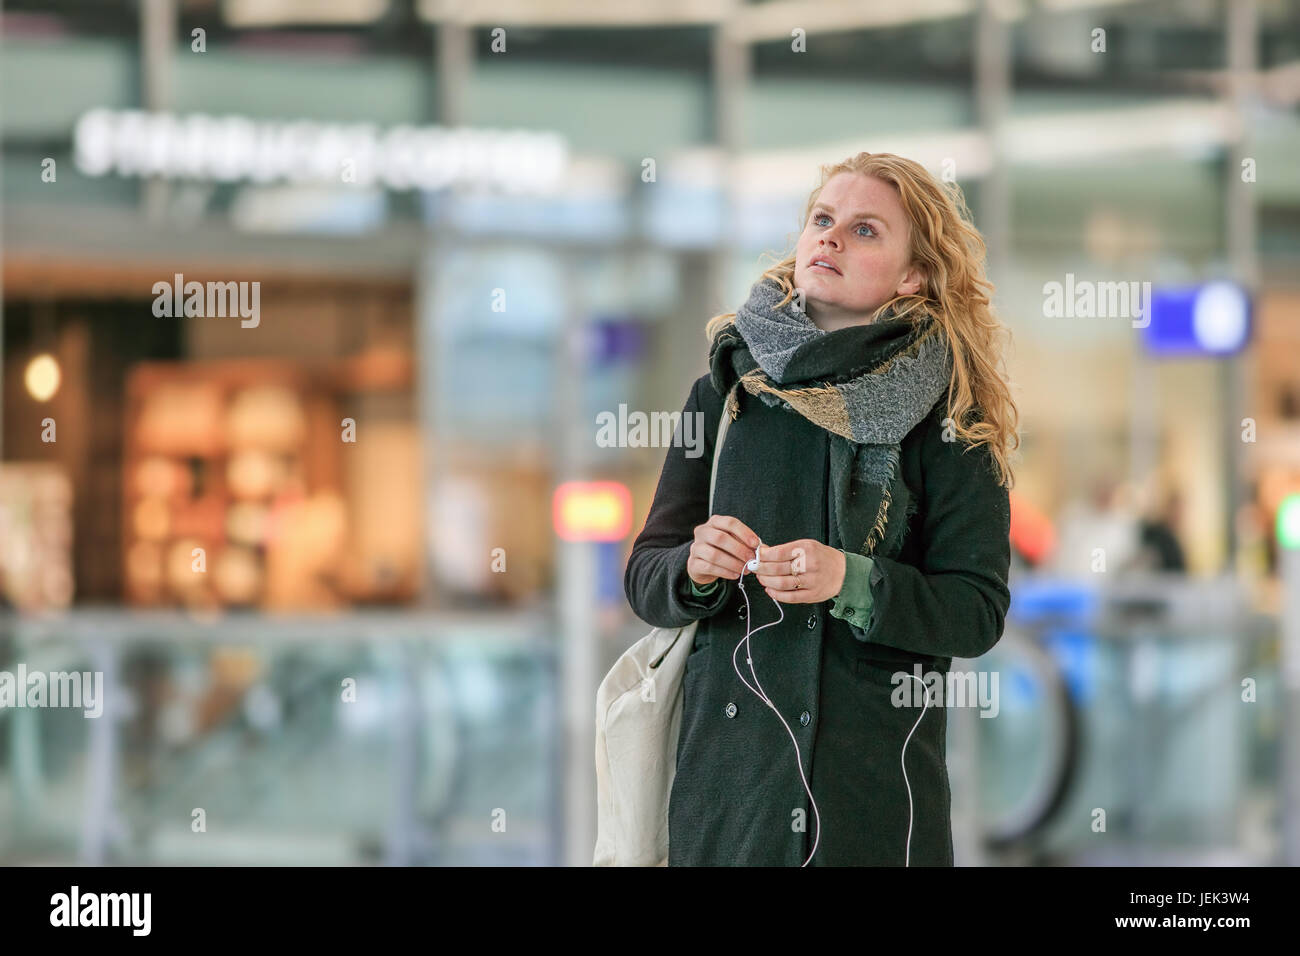 UTRECHT - März 2, 2017. Junge holländische Frau in Utrecht Hauptbahnhof, dem größten und verkehrsreichsten Bahnhof in den Niederlanden. Stockfoto